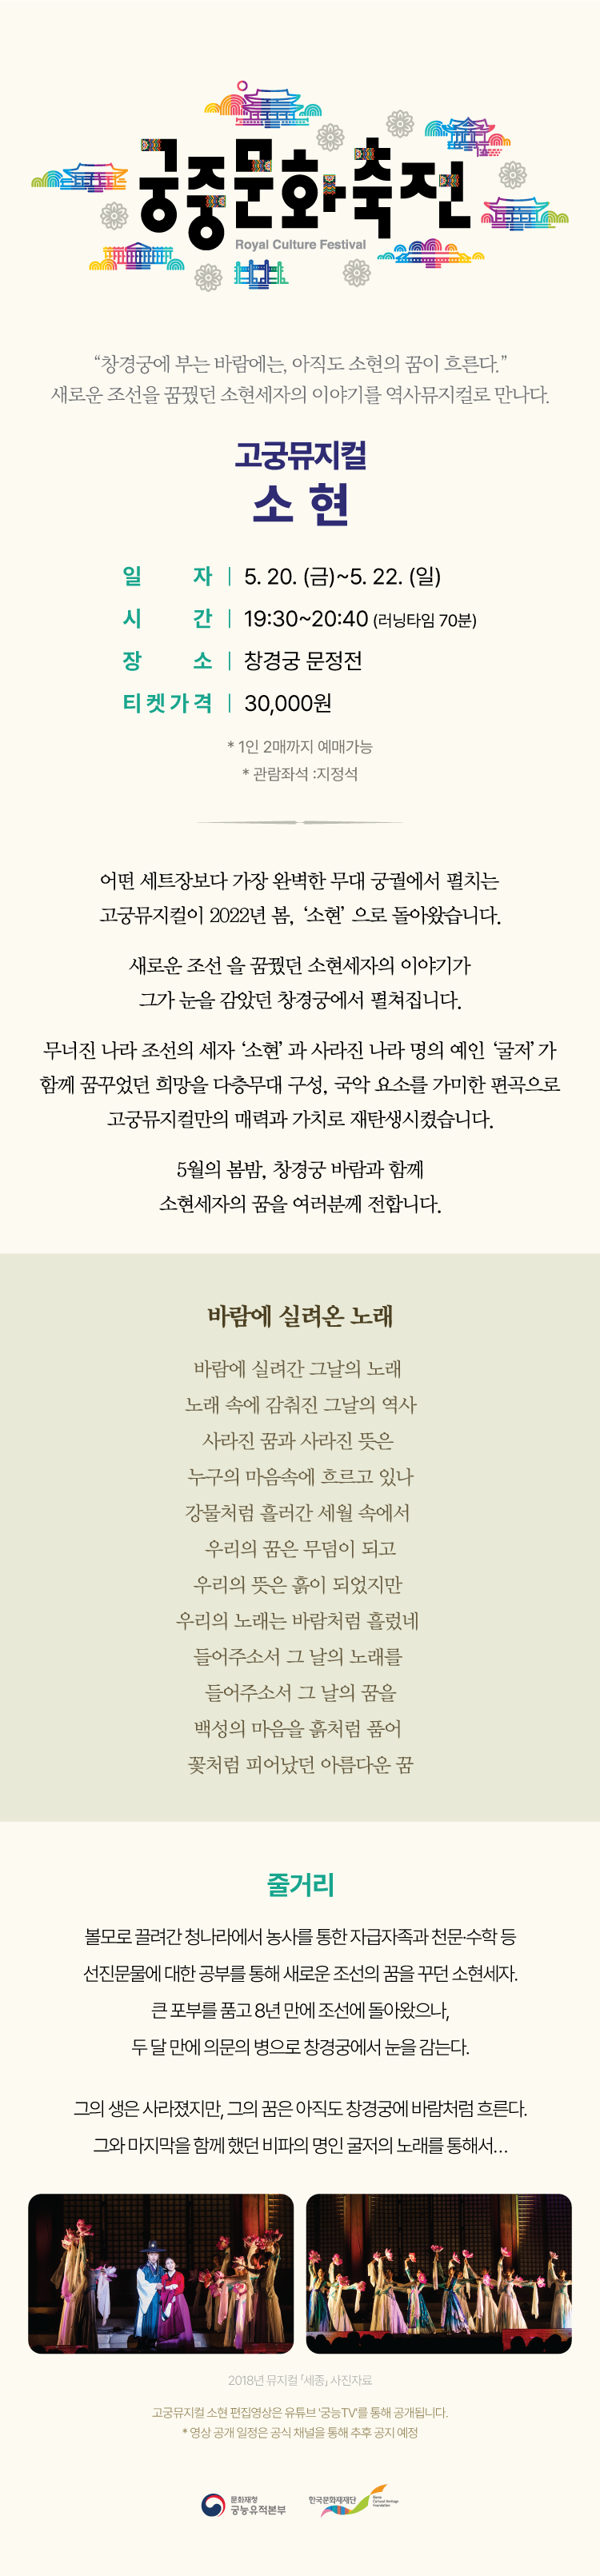 고궁뮤지컬 '소현' 웹페이지